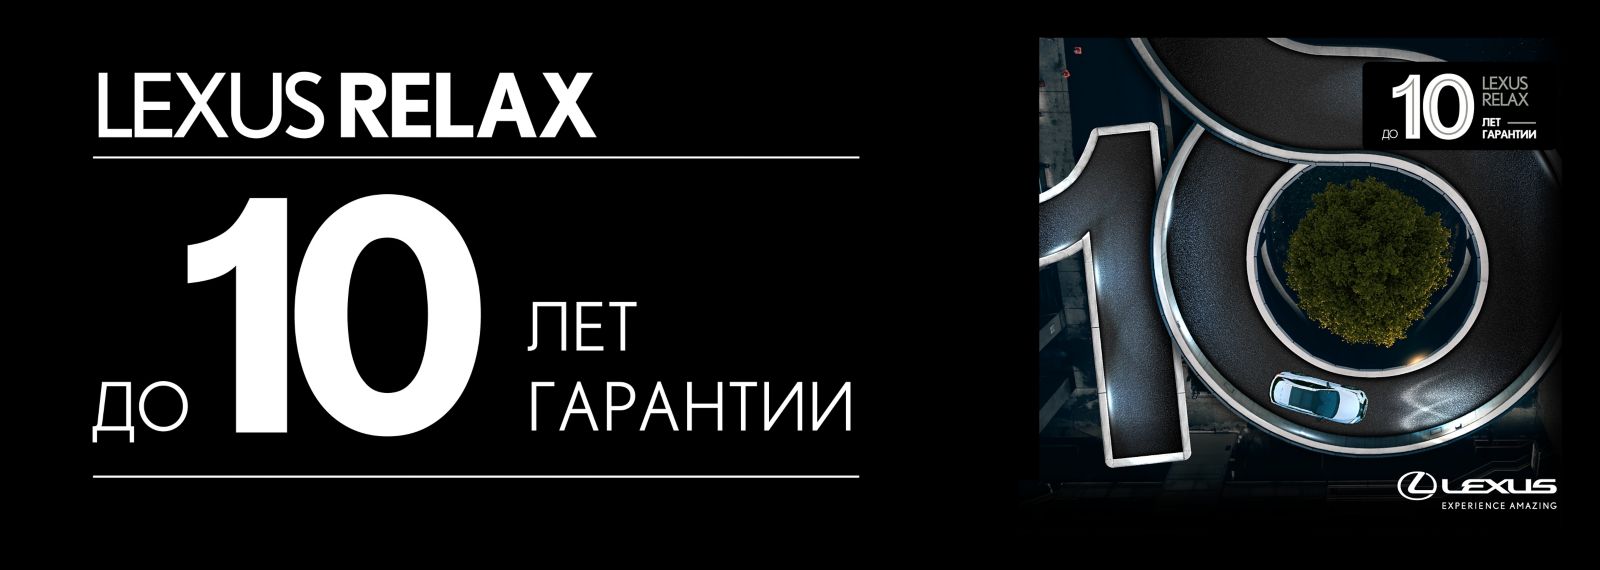 Lexus_Relax_ru